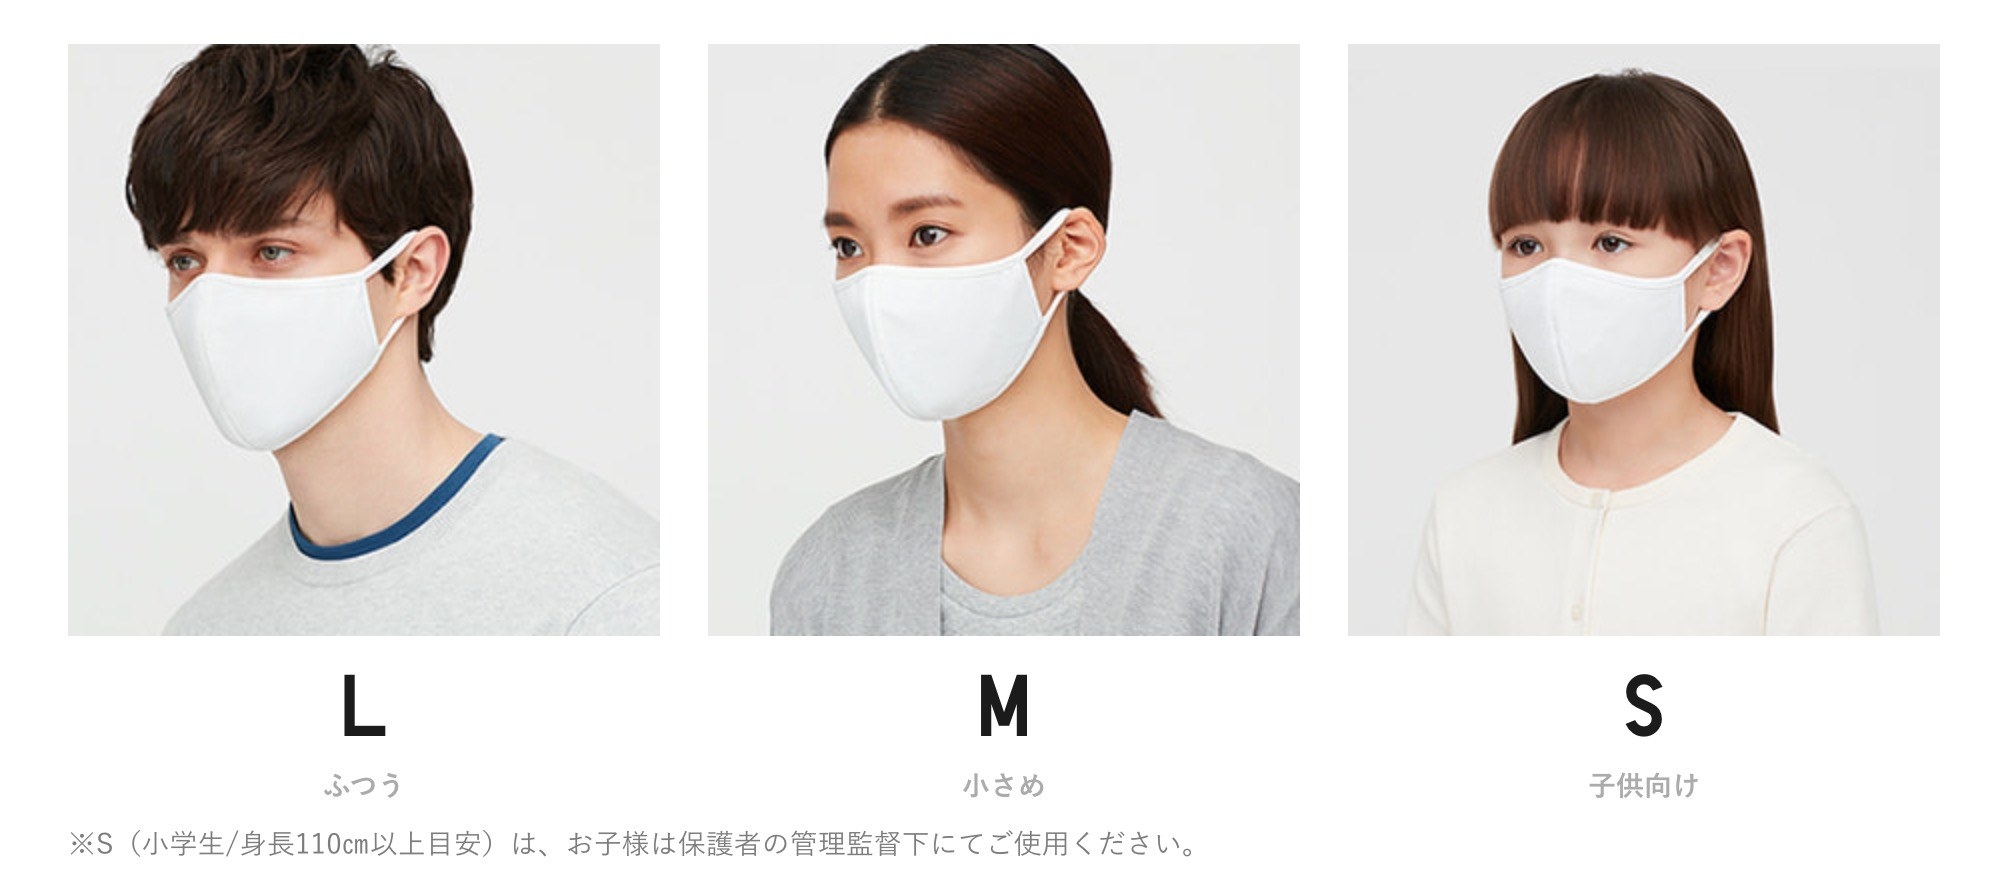 新品未開封 ユニクロ エアリズムマスク こどもSサイズ ホワイト 3枚組×4袋